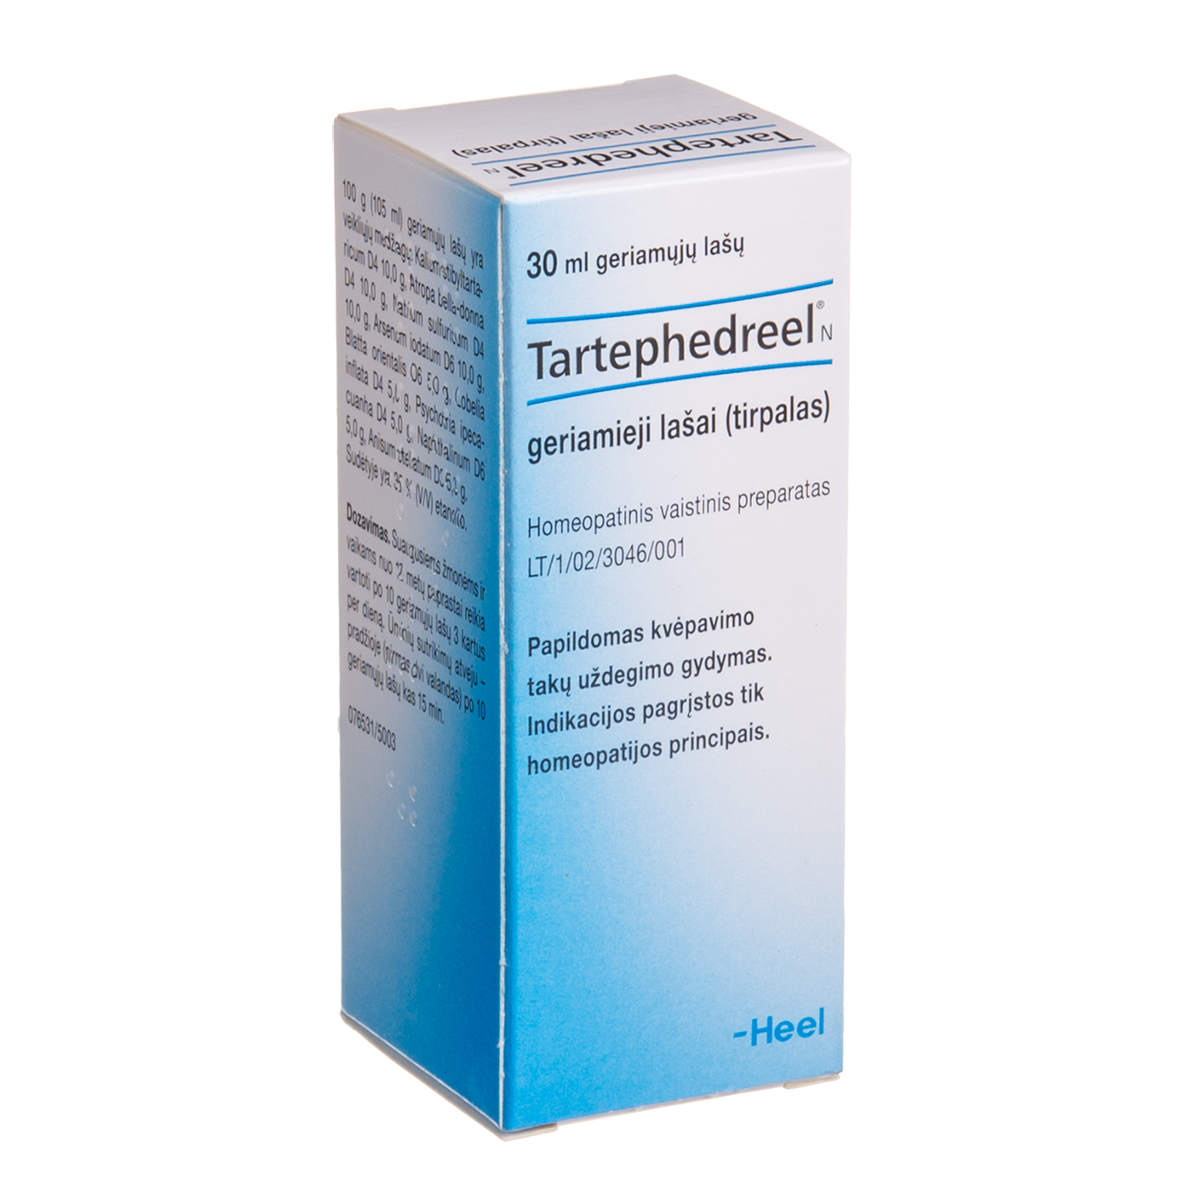 TARTEPHEDREEL N, geriamieji lašai (tirpalas), 30 ml